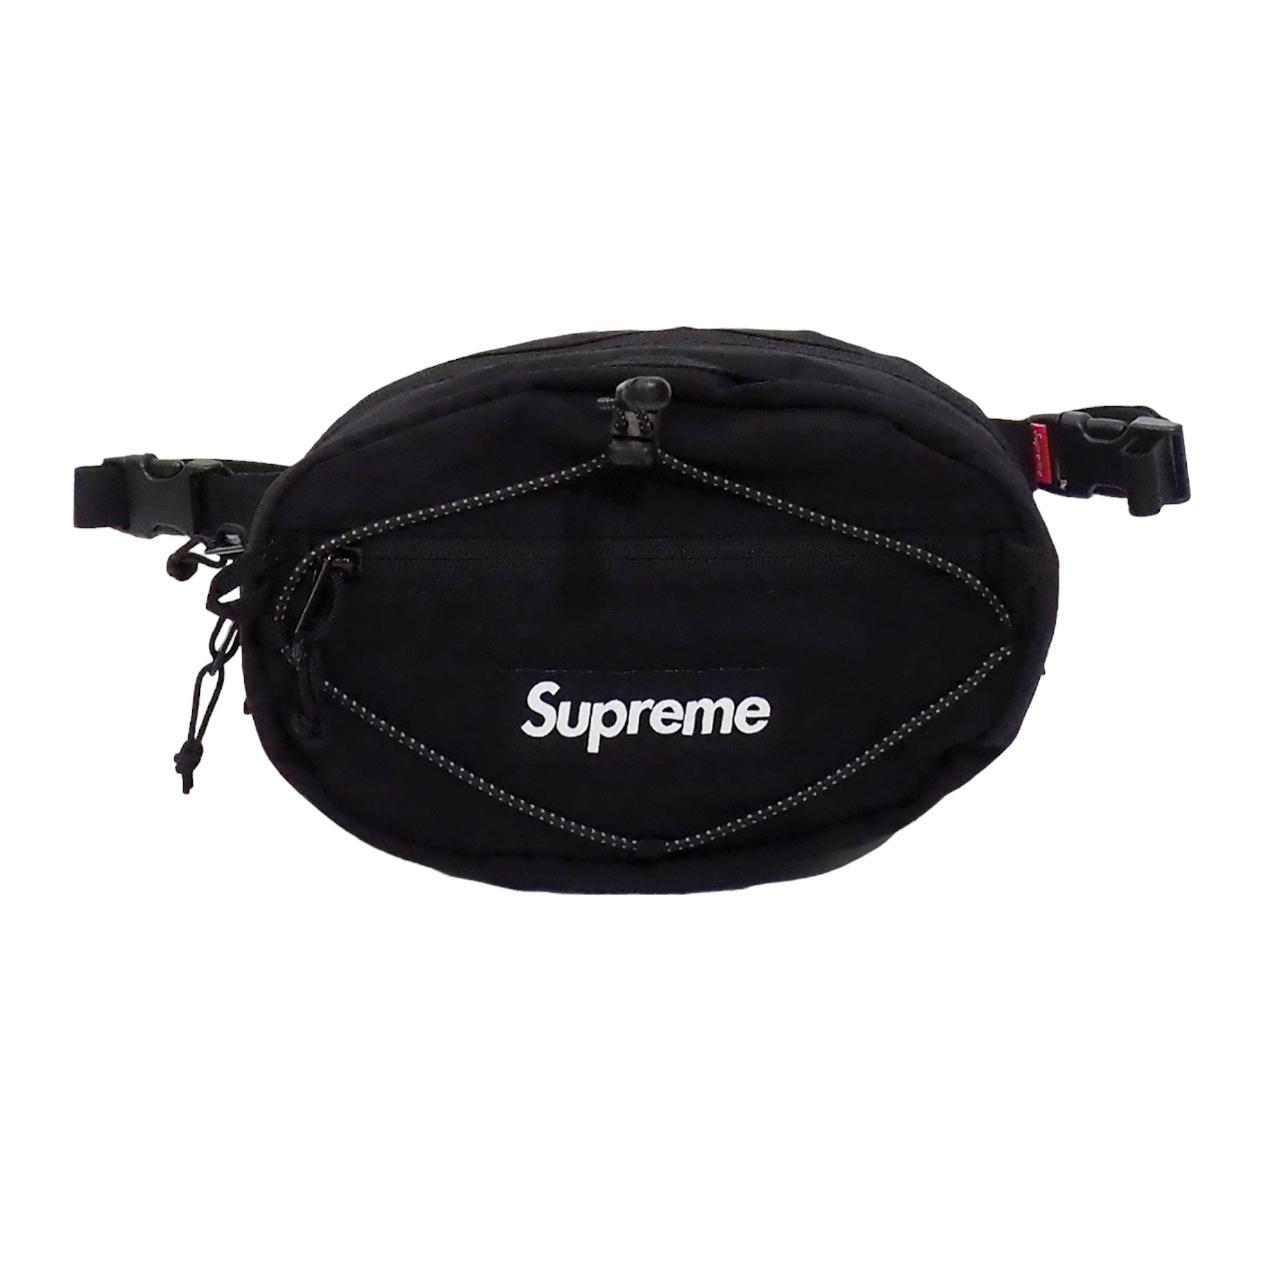 Supreme FW20 Waist Bag Black 🏆 Trusted Seller 🚚 - Depop